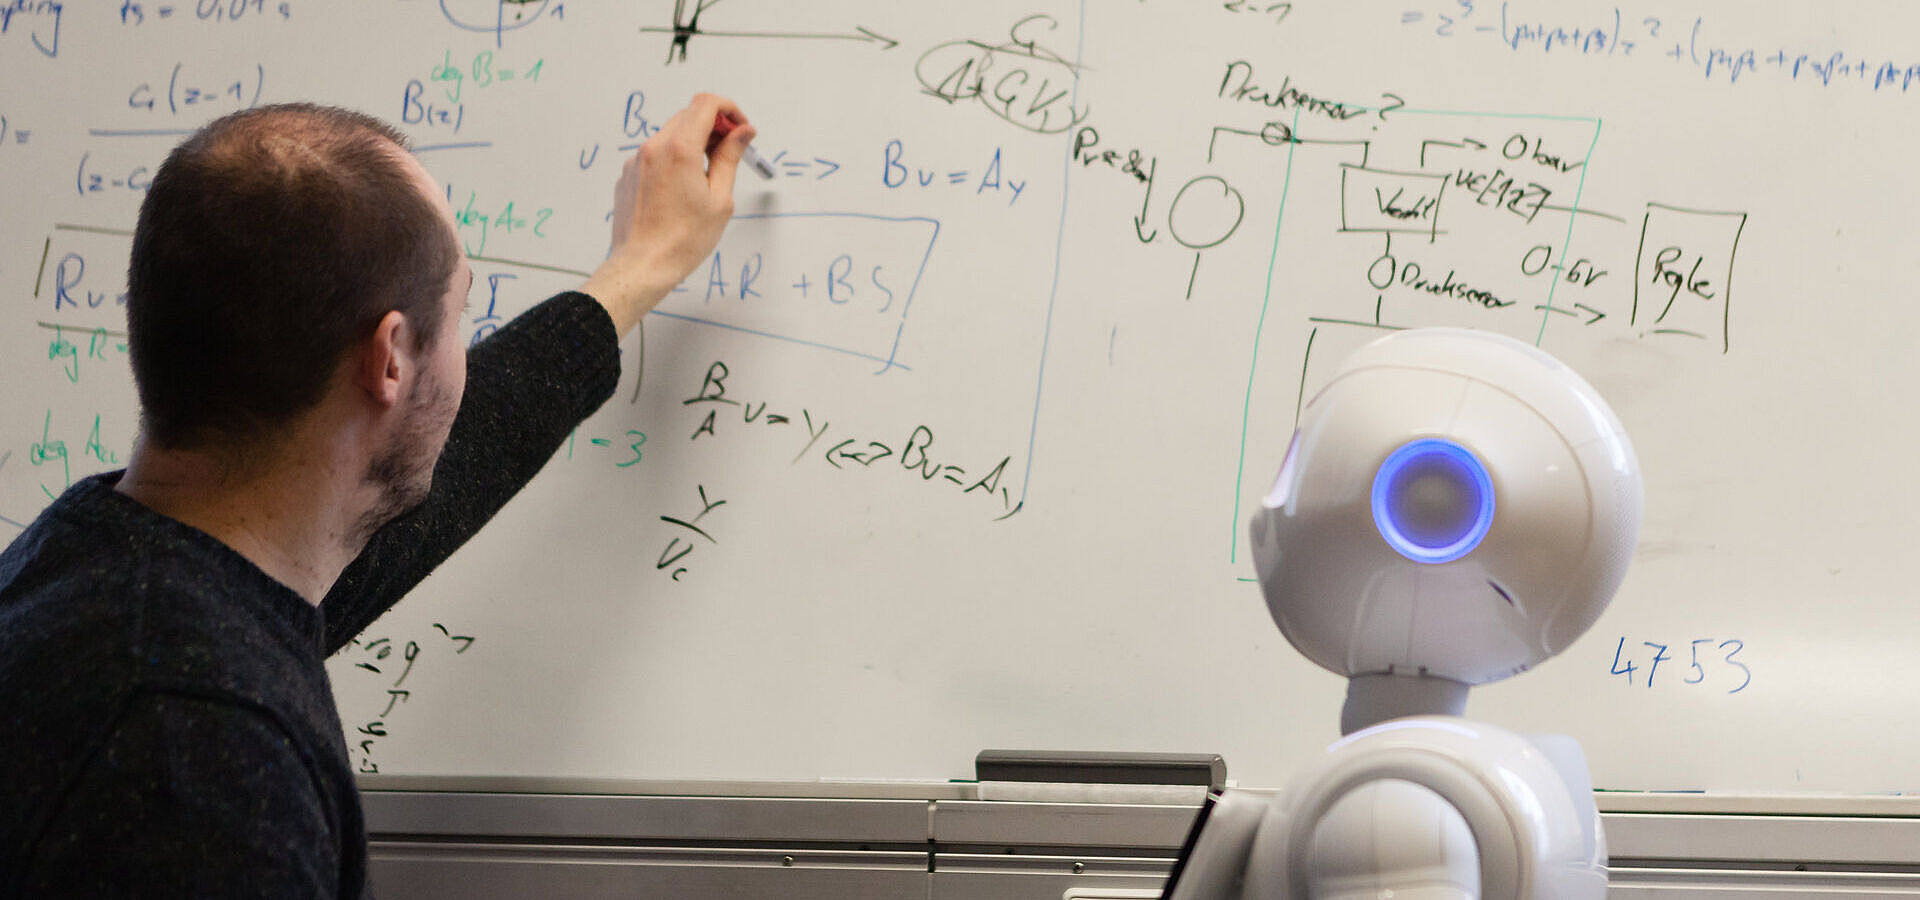 Wissenschaftler der Technischen Universität Berlin bei der Interaktion mit dem humanoiden Roboter Pepper, vor einer Tafel stehend etwas erläuternd 